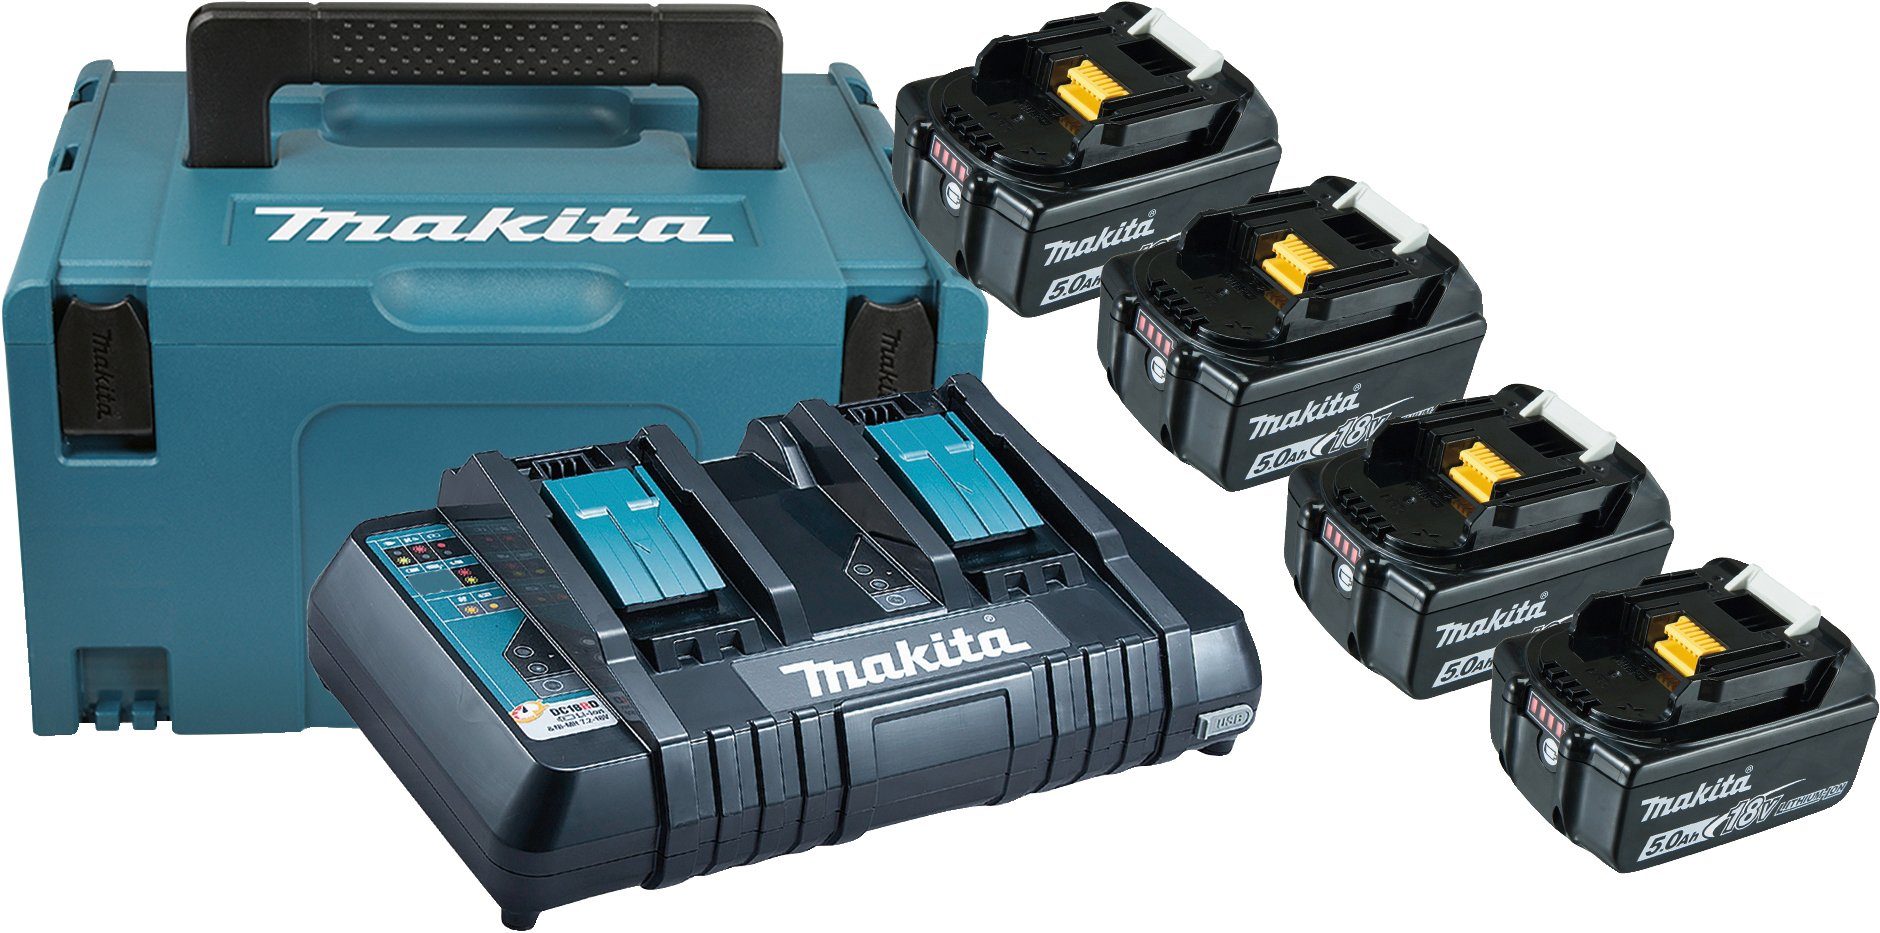 MAKITA Akku-Set »Power Source Kit«, 4 Akkus (18 V, 5 Ah) und Ladegerät .